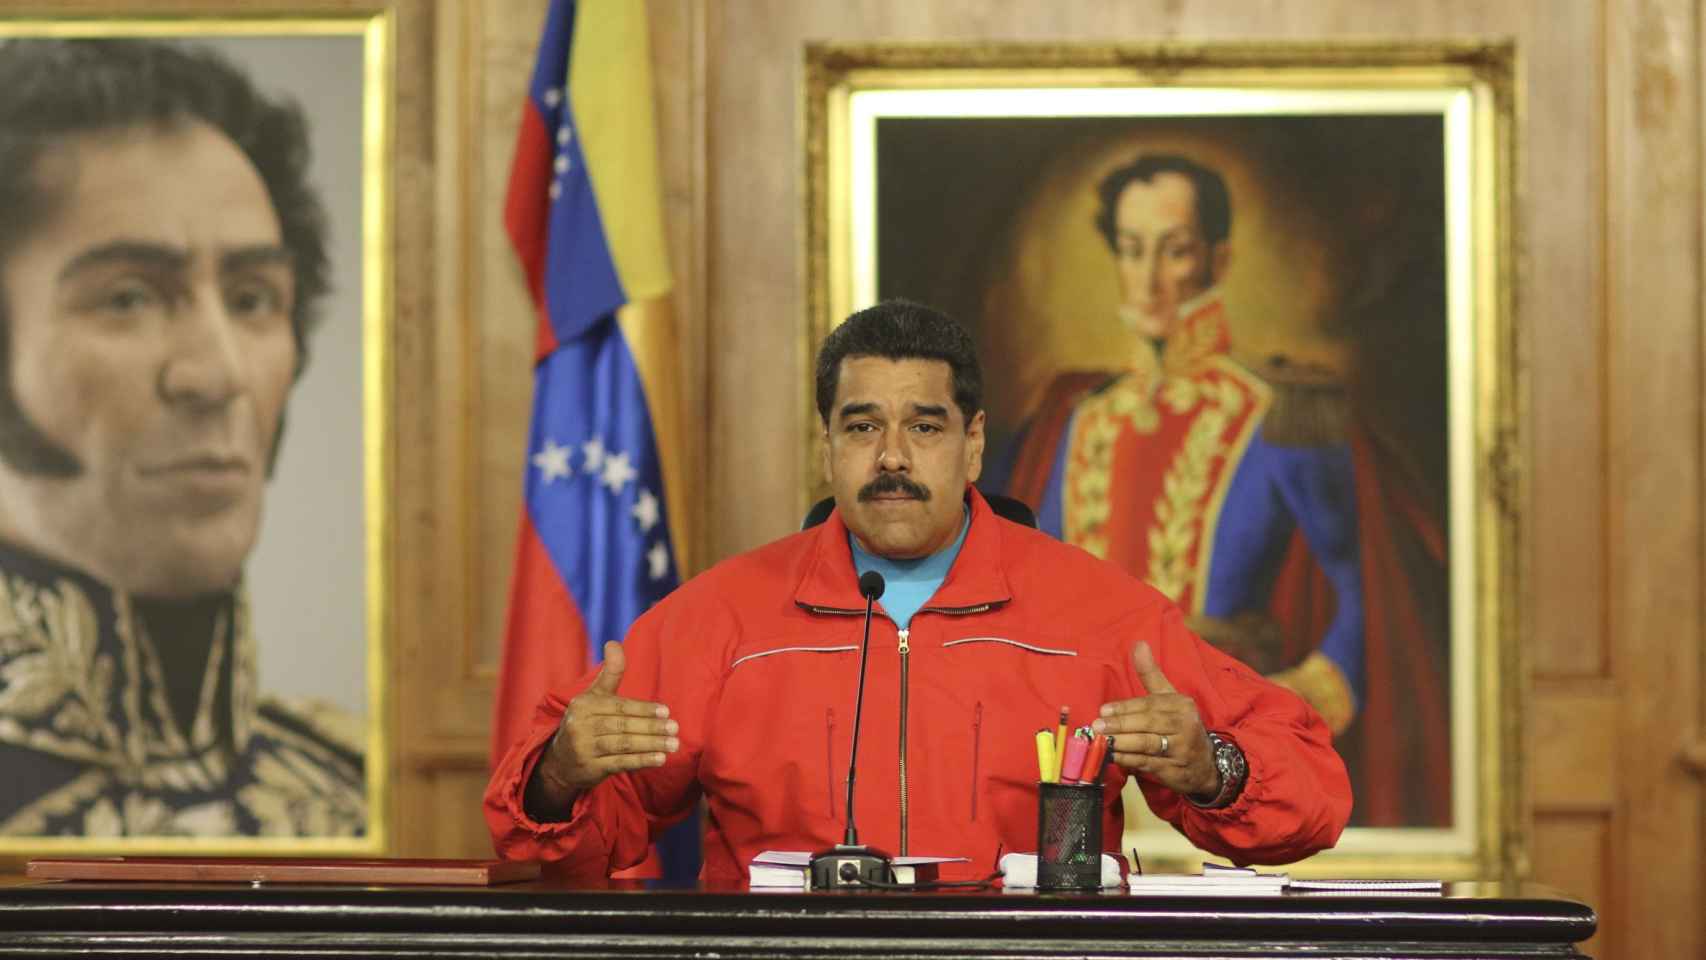 Al presidente venezolano le quedan pocas opciones.